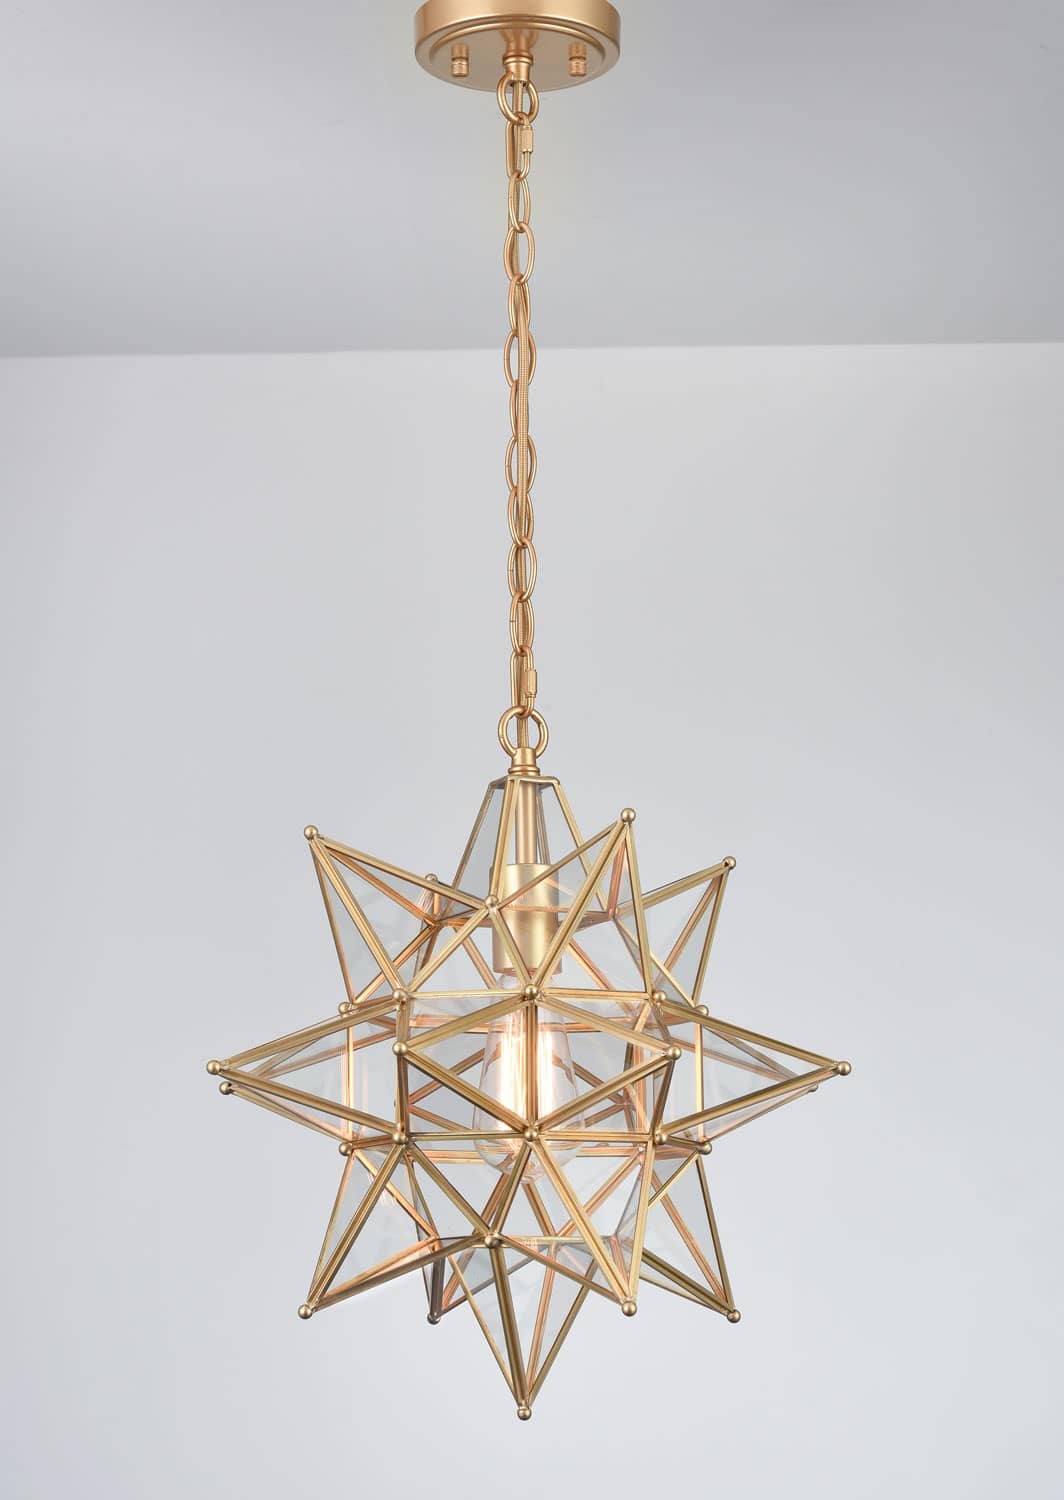 Modern Moravian Star Pendant Light Boho Gold Hanging Light 16 Inch